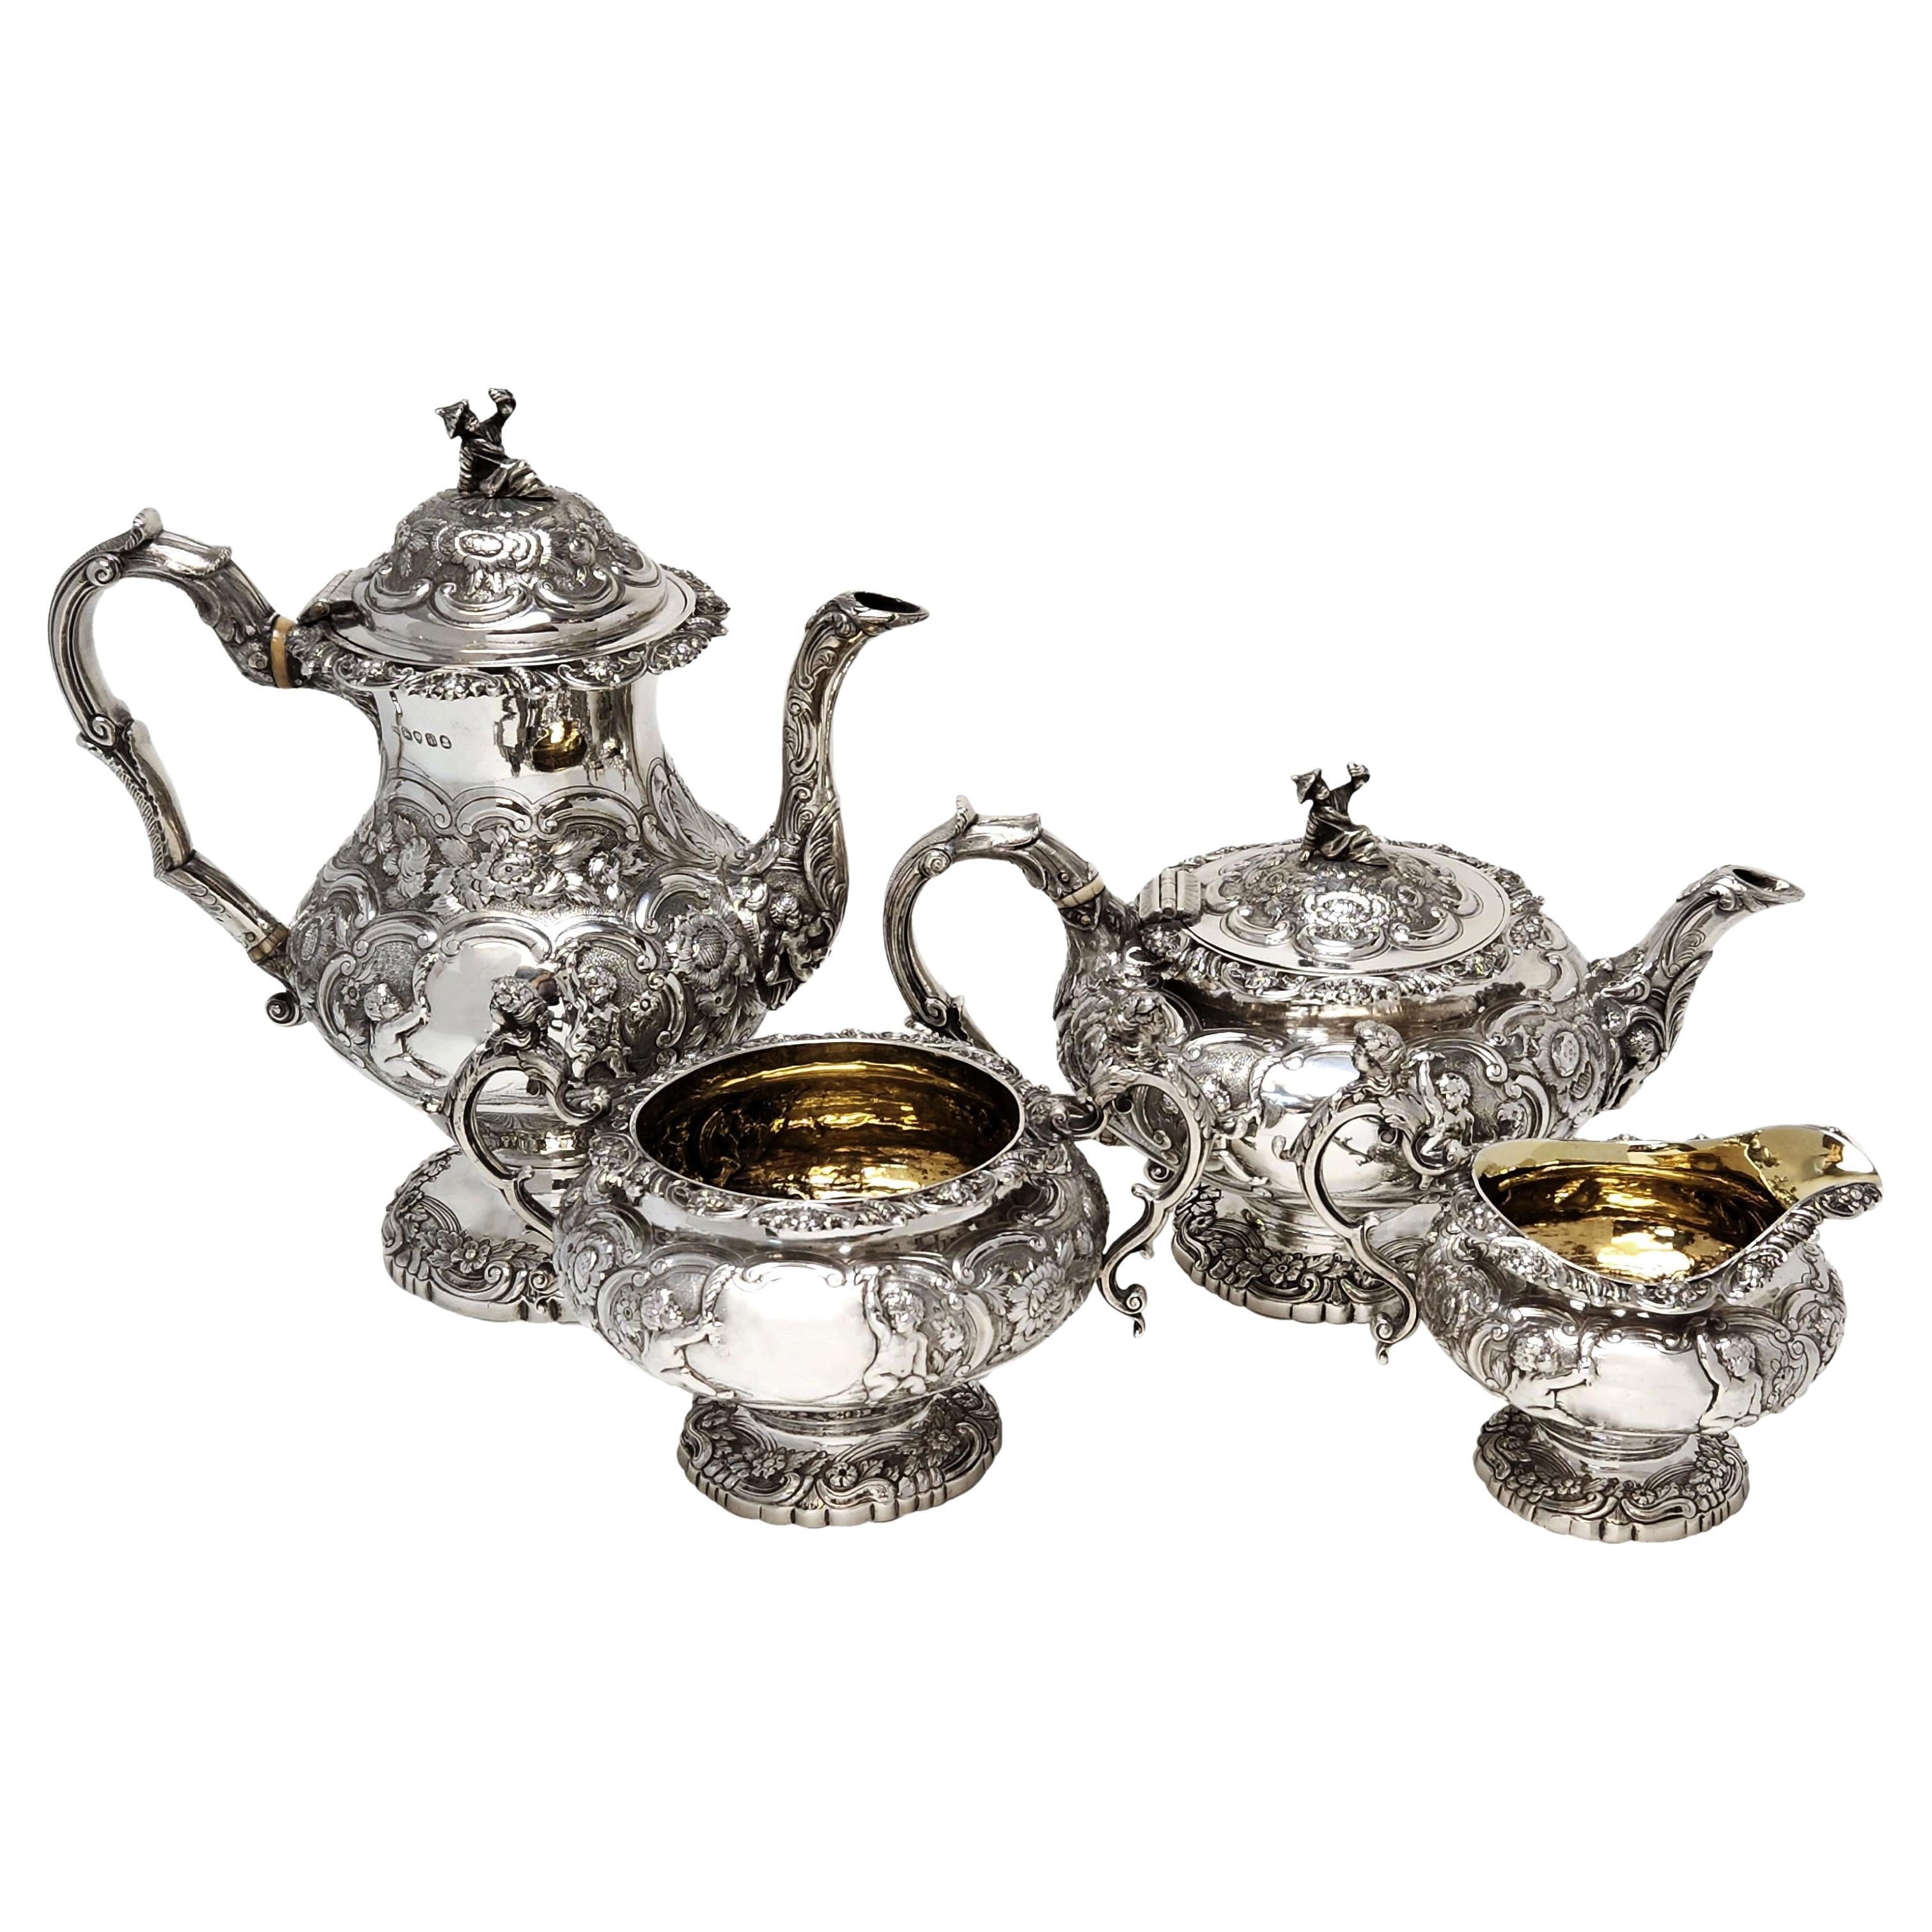 Georgian Antique Silver 4 Piece Tea & Coffee Set 1824 Teapot Coffee Pot